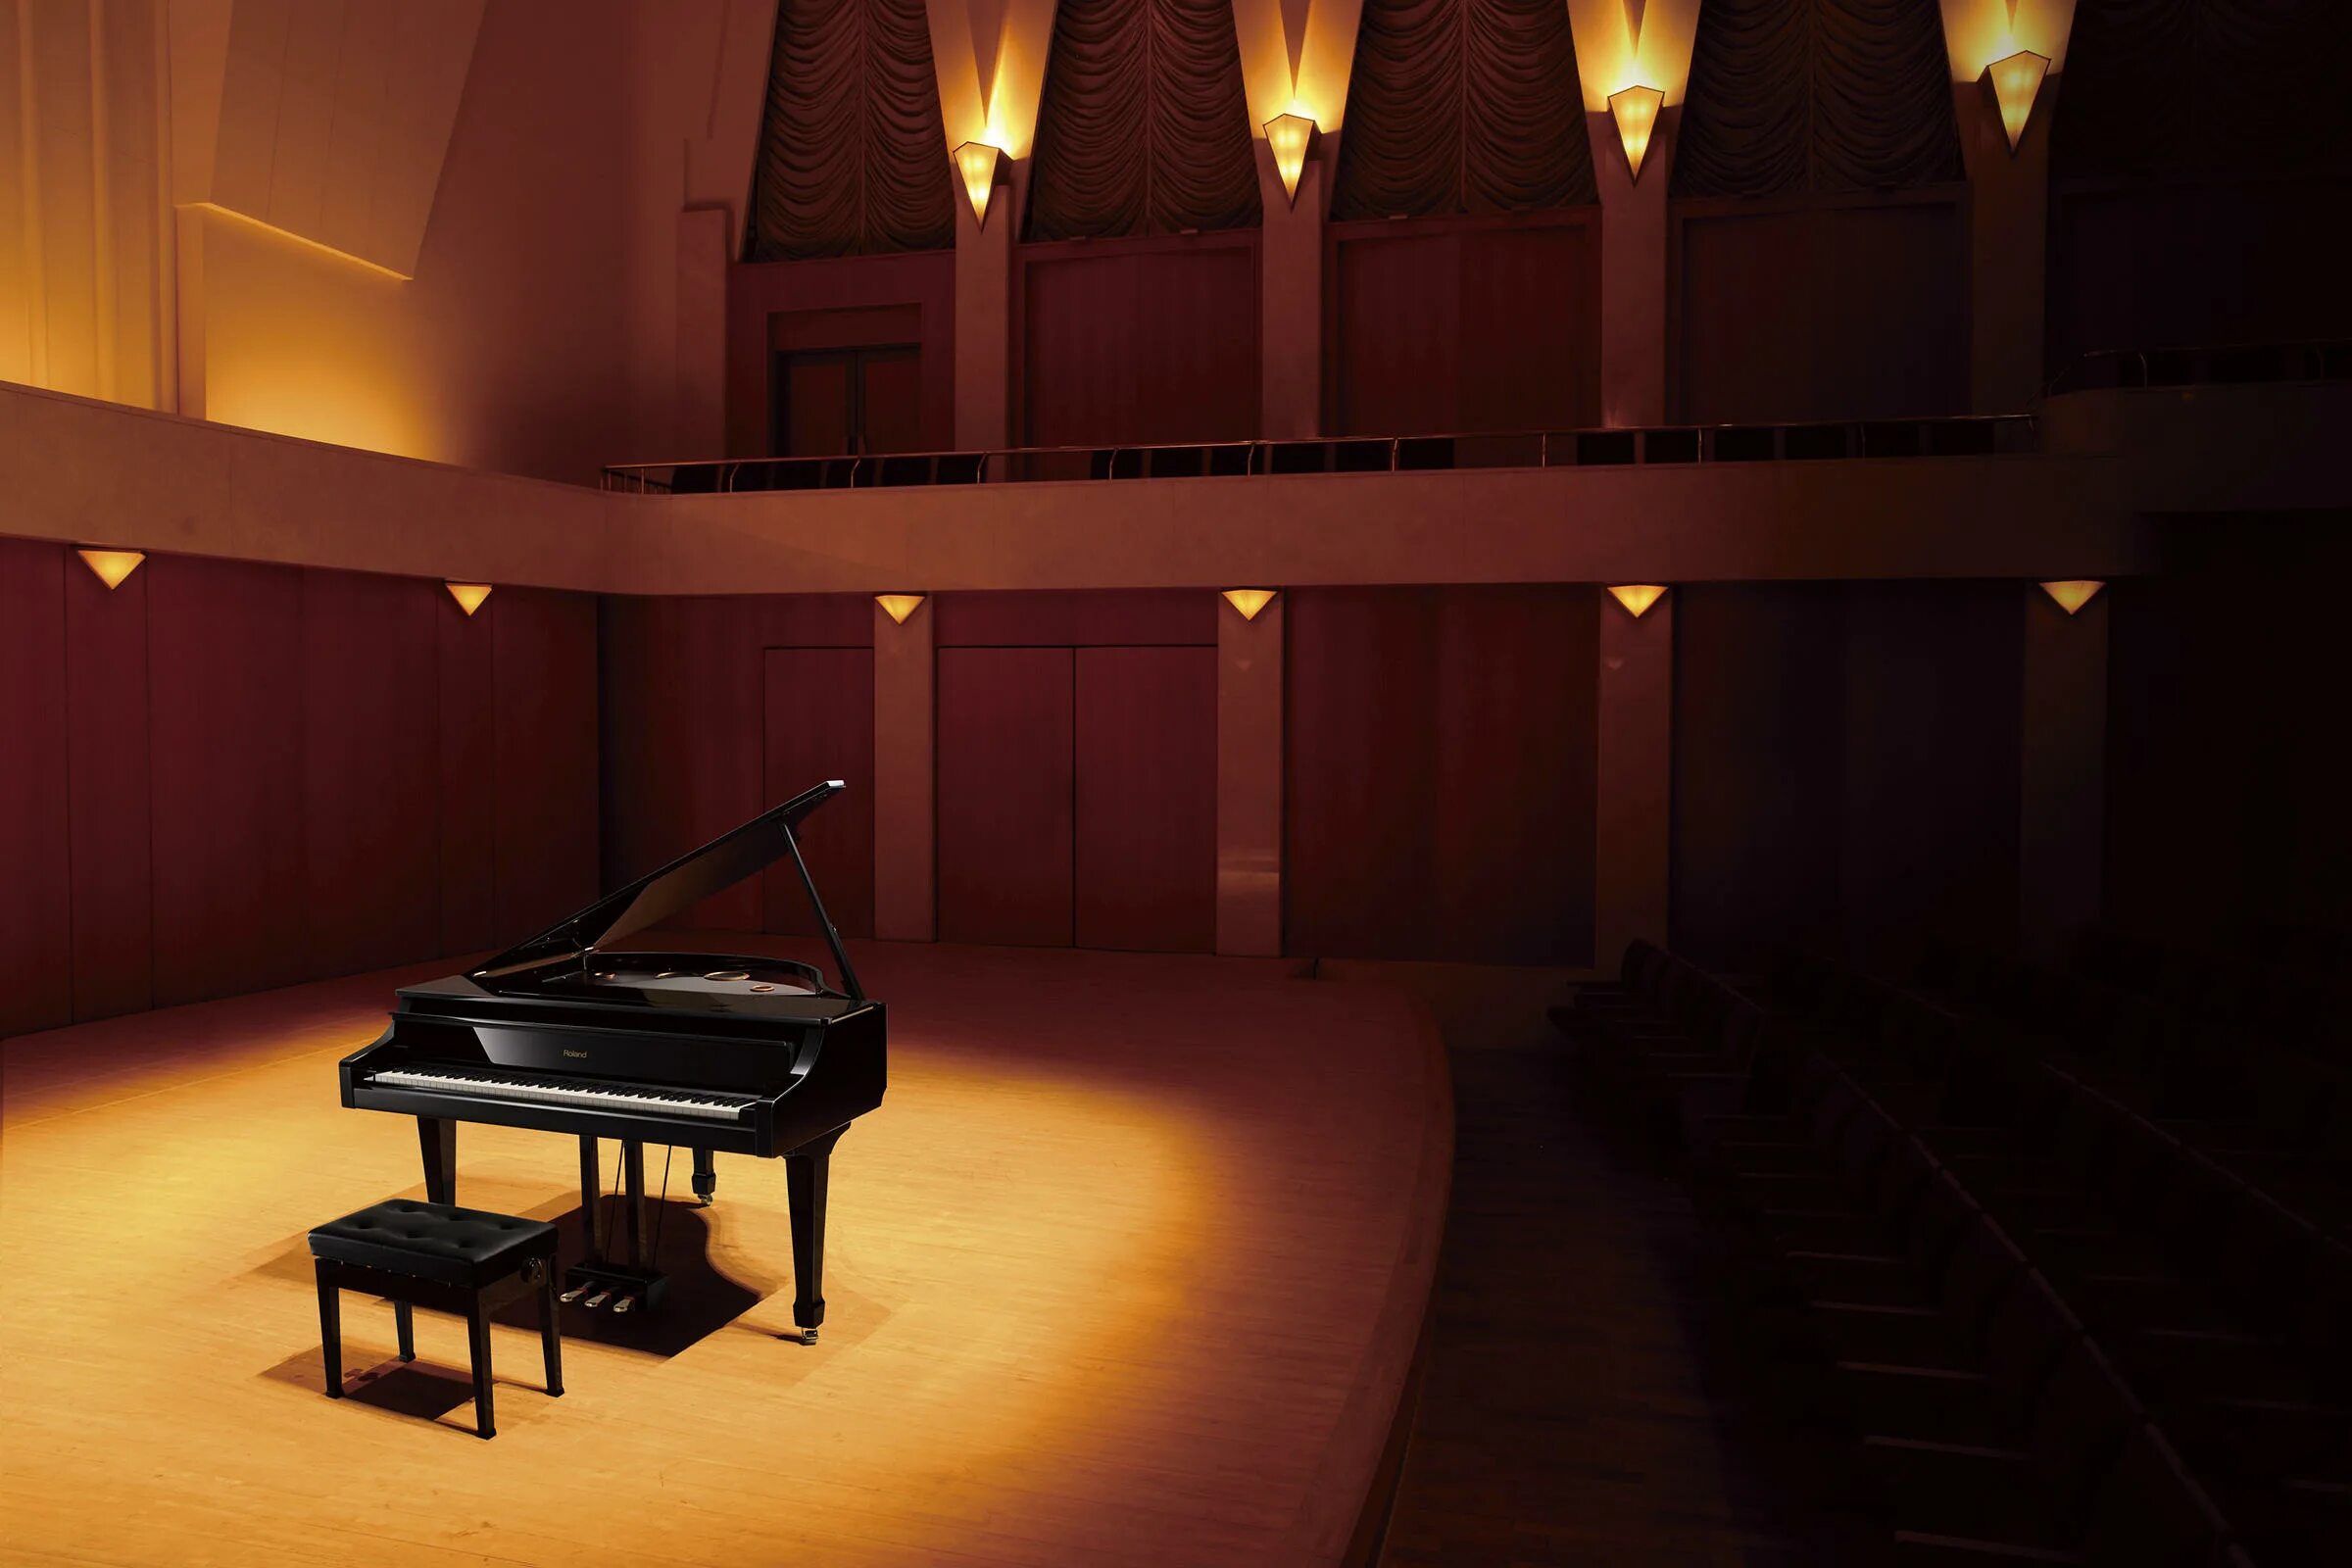 Фортепиано в концертном зале. Рояль в концертном зале. Концертный зал с роялем. Зал с фортепиано. Игры с залом музыка